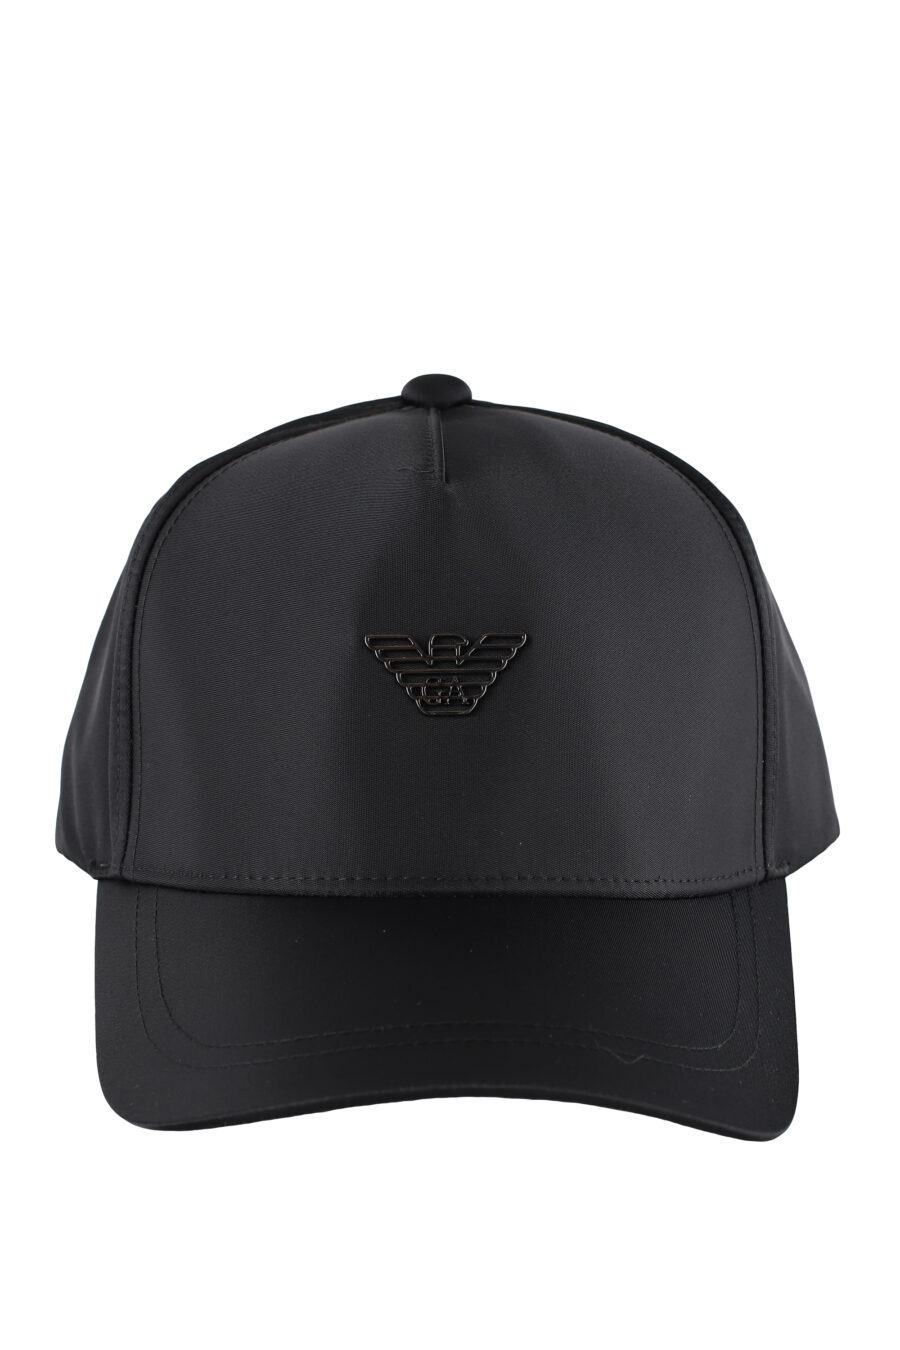 Gorra negra con logo águila en metal - IMG 5176